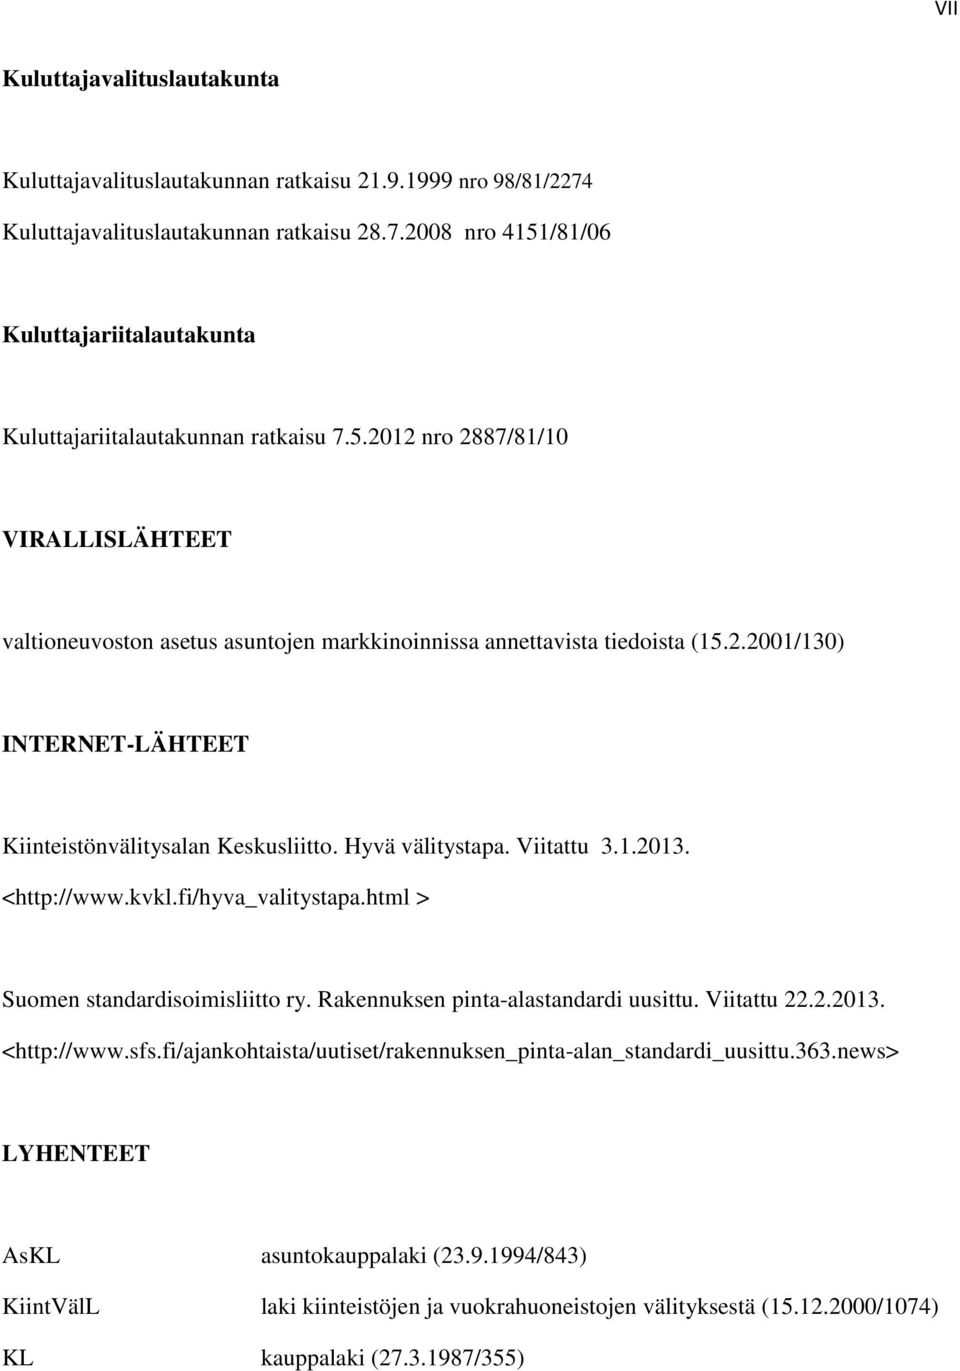 Viitattu 3.1.2013. <http://www.kvkl.fi/hyva_valitystapa.html > Suomen standardisoimisliitto ry. Rakennuksen pinta-alastandardi uusittu. Viitattu 22.2.2013. <http://www.sfs.